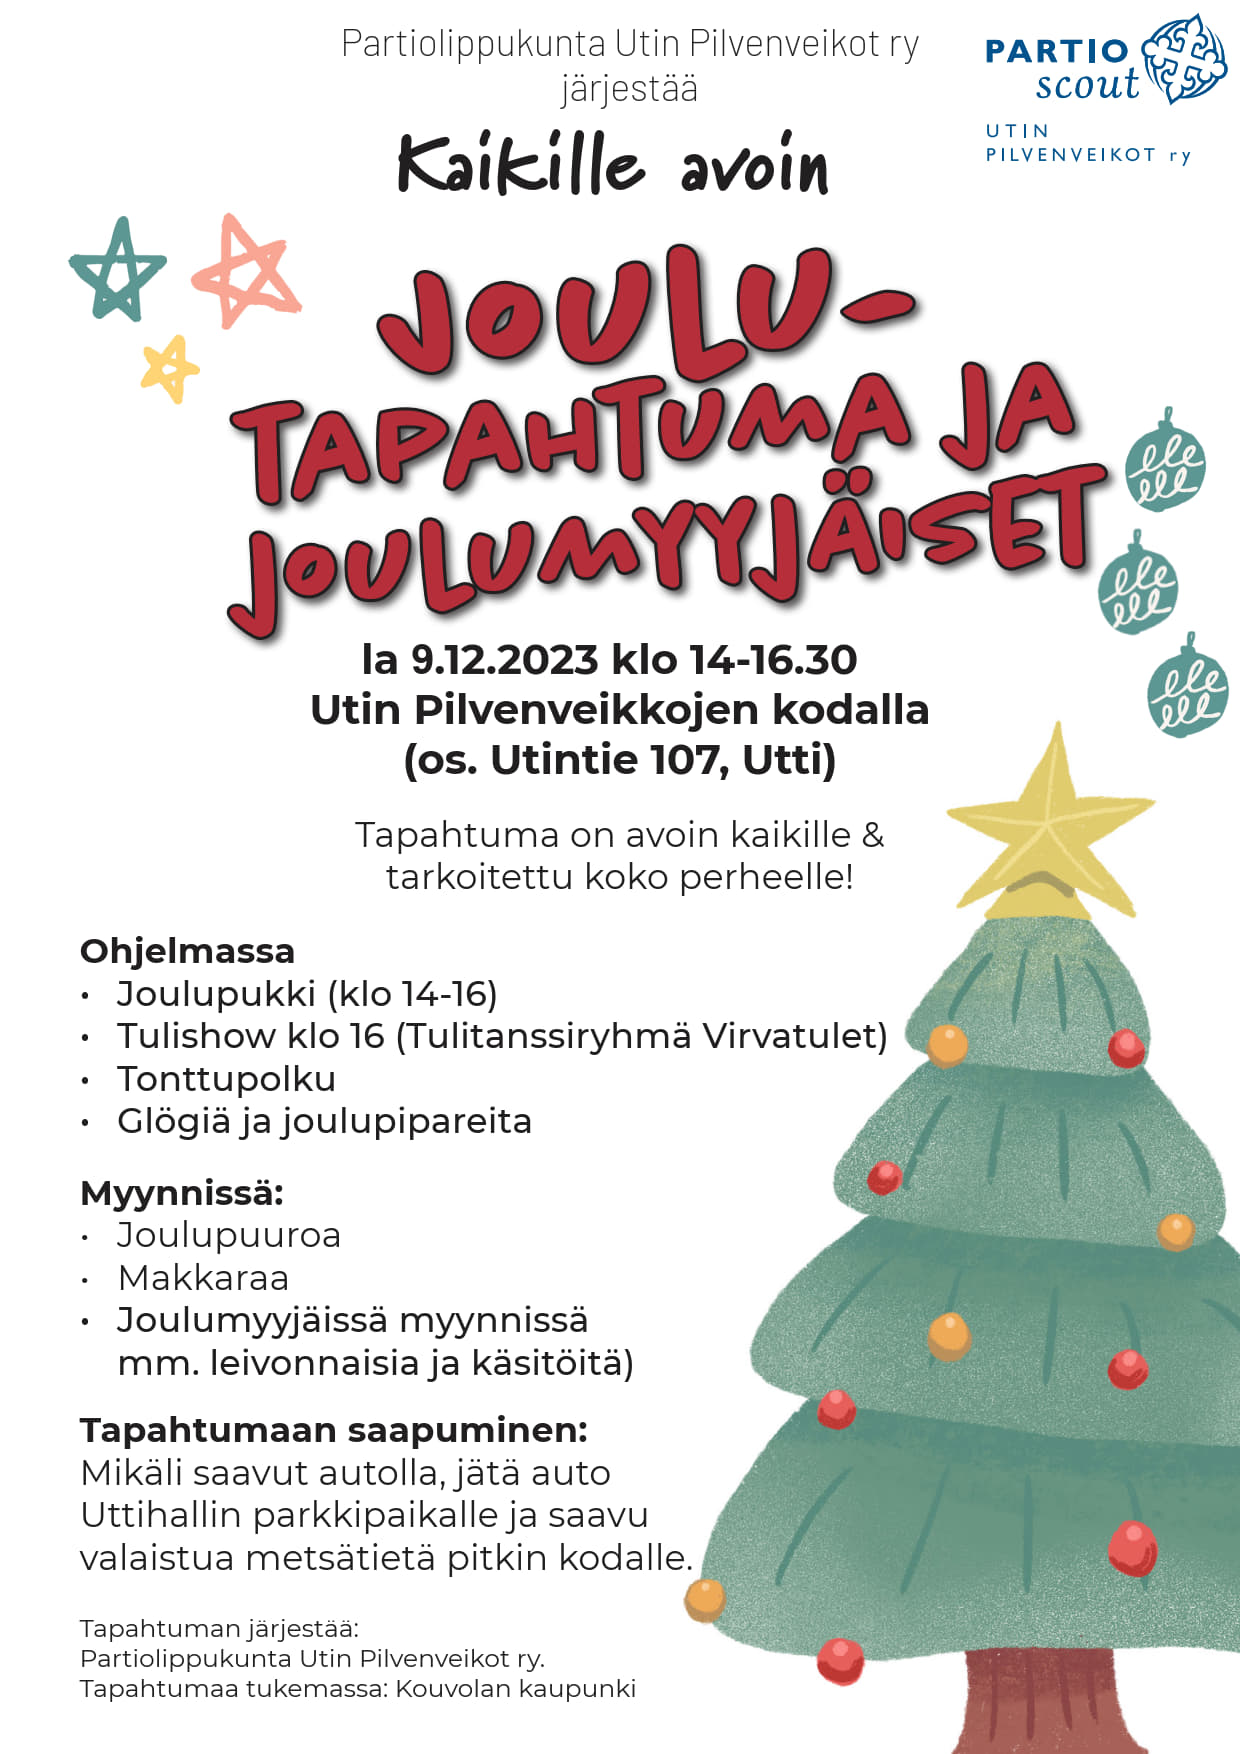 Joulutapahtuma ja joulumyyjäiset 9.12. klo 14-16.30 Utin Pilvenveikkojen kodalla, Utintie 107.